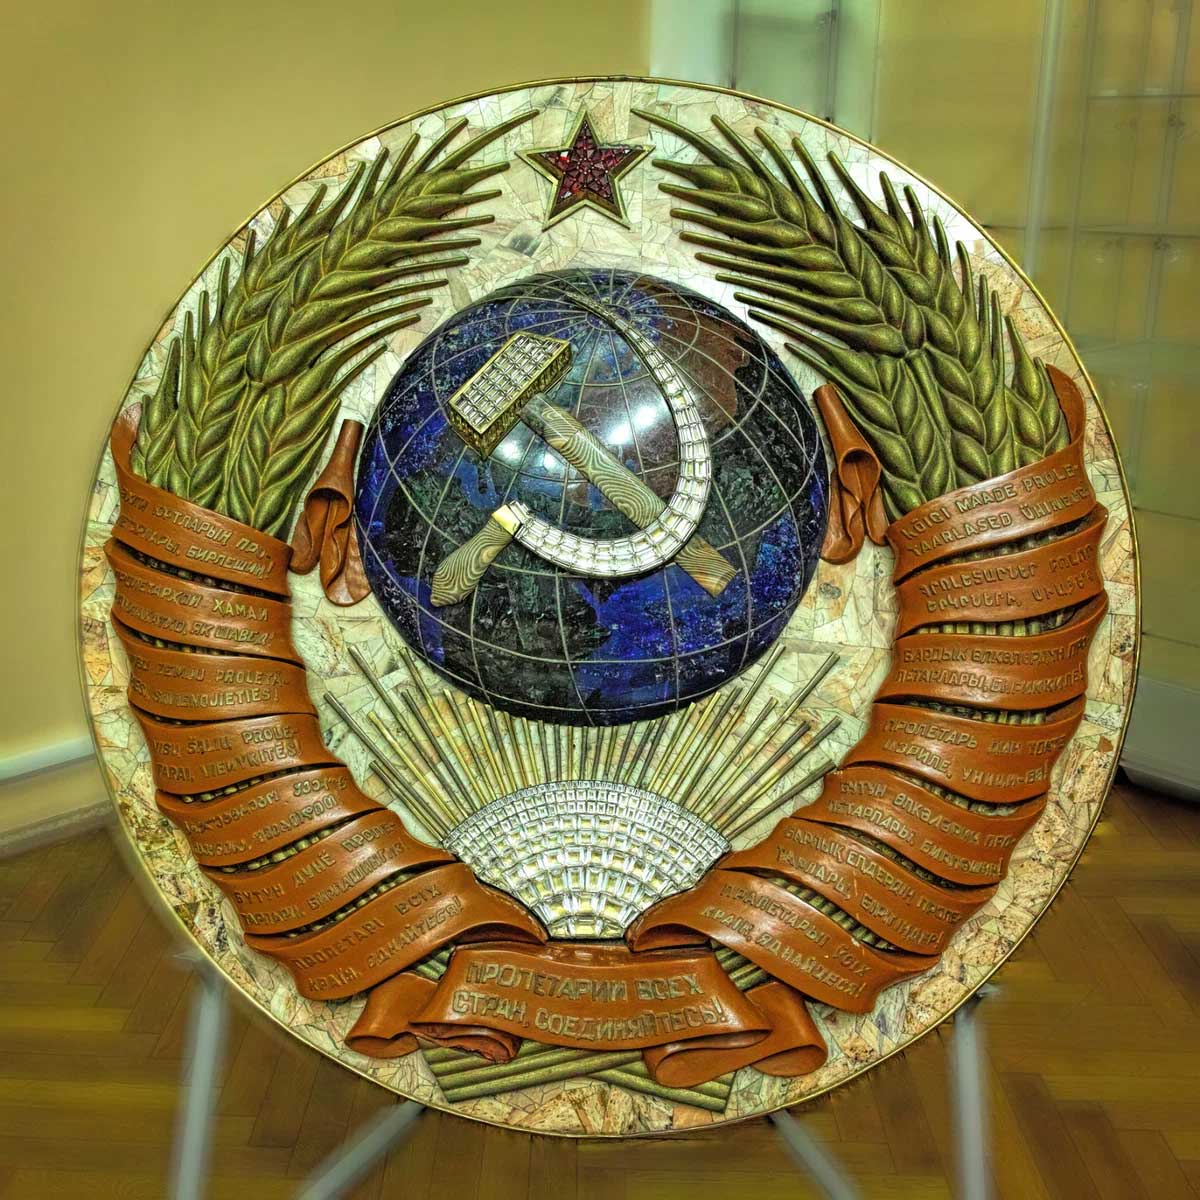 Герб Союза ССР, который венчал мозаичное панно, создан в стилистике самой карты.